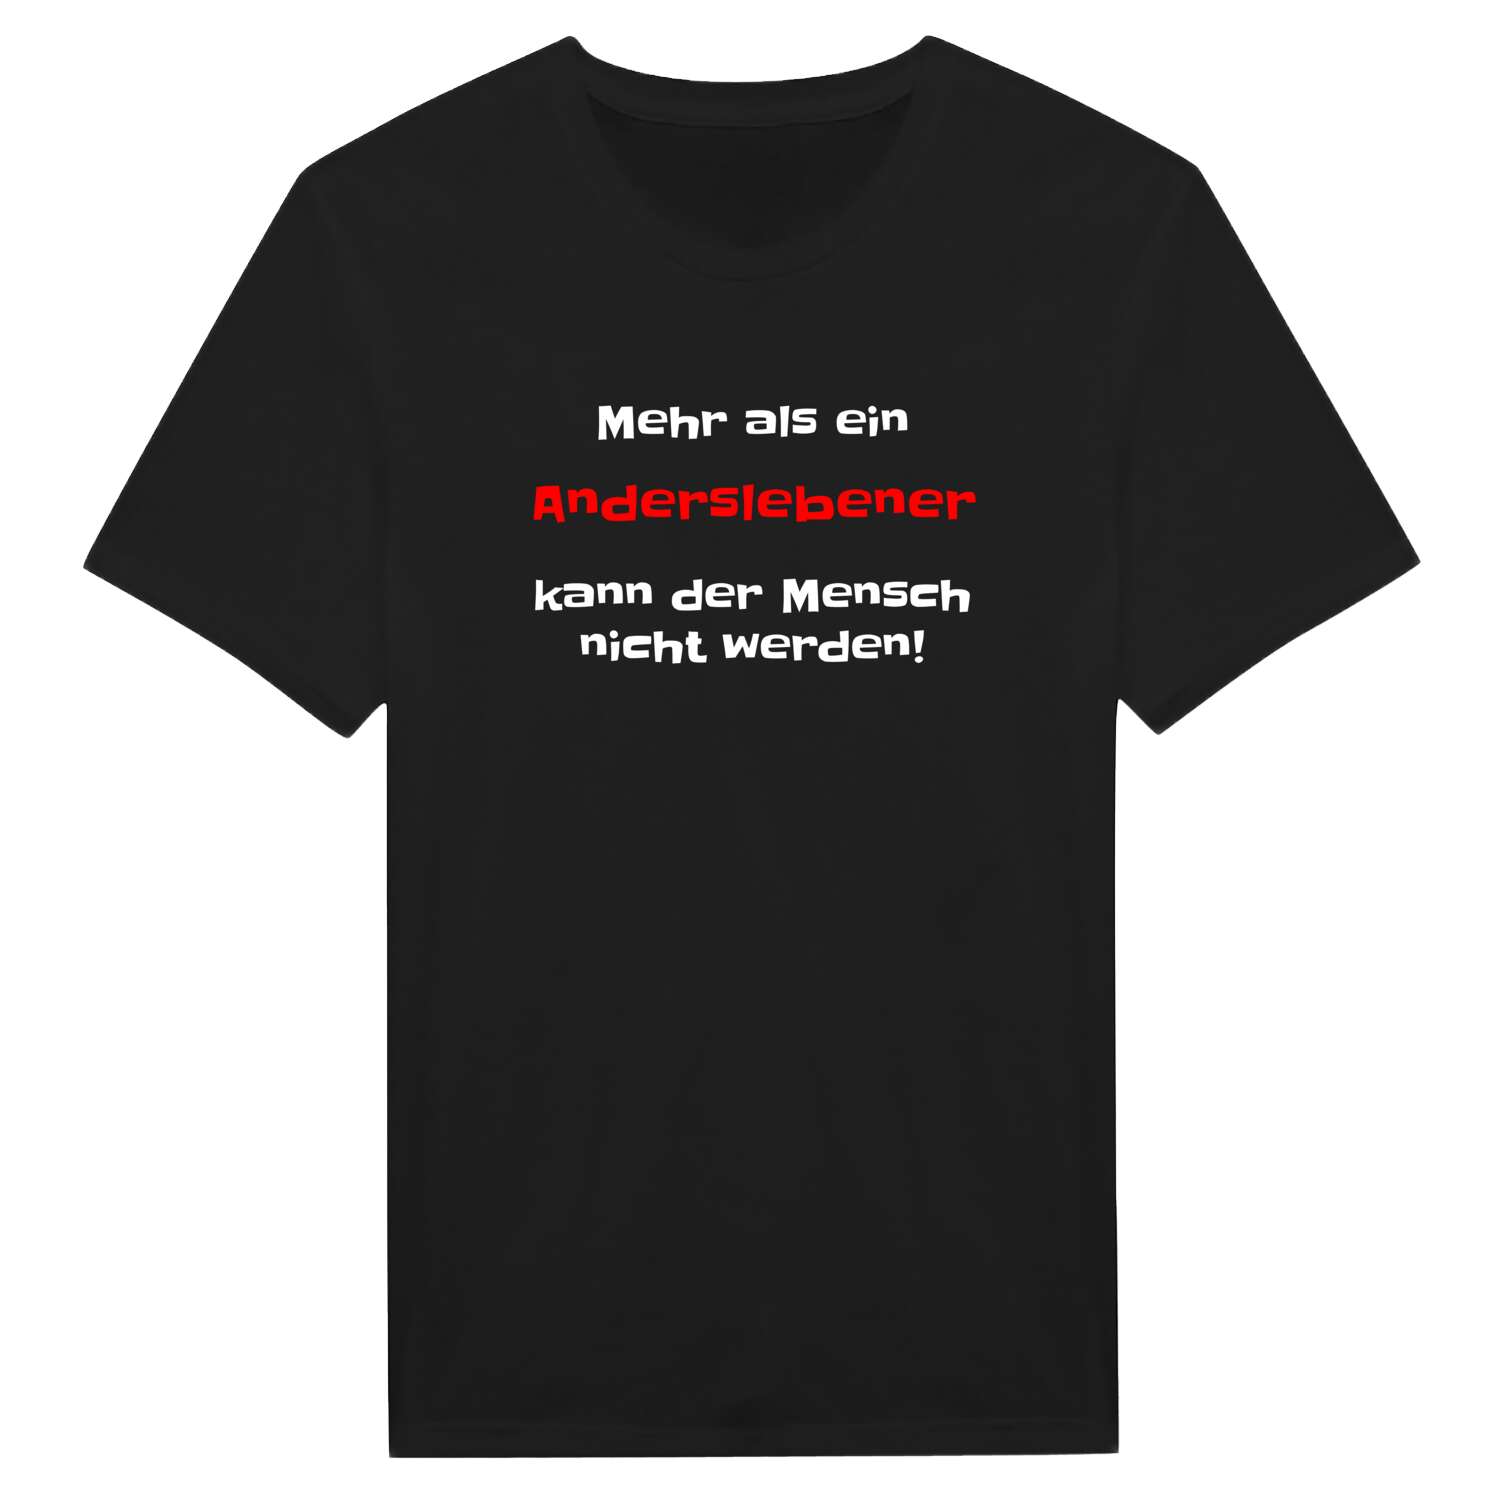 Andersleben T-Shirt »Mehr als ein«